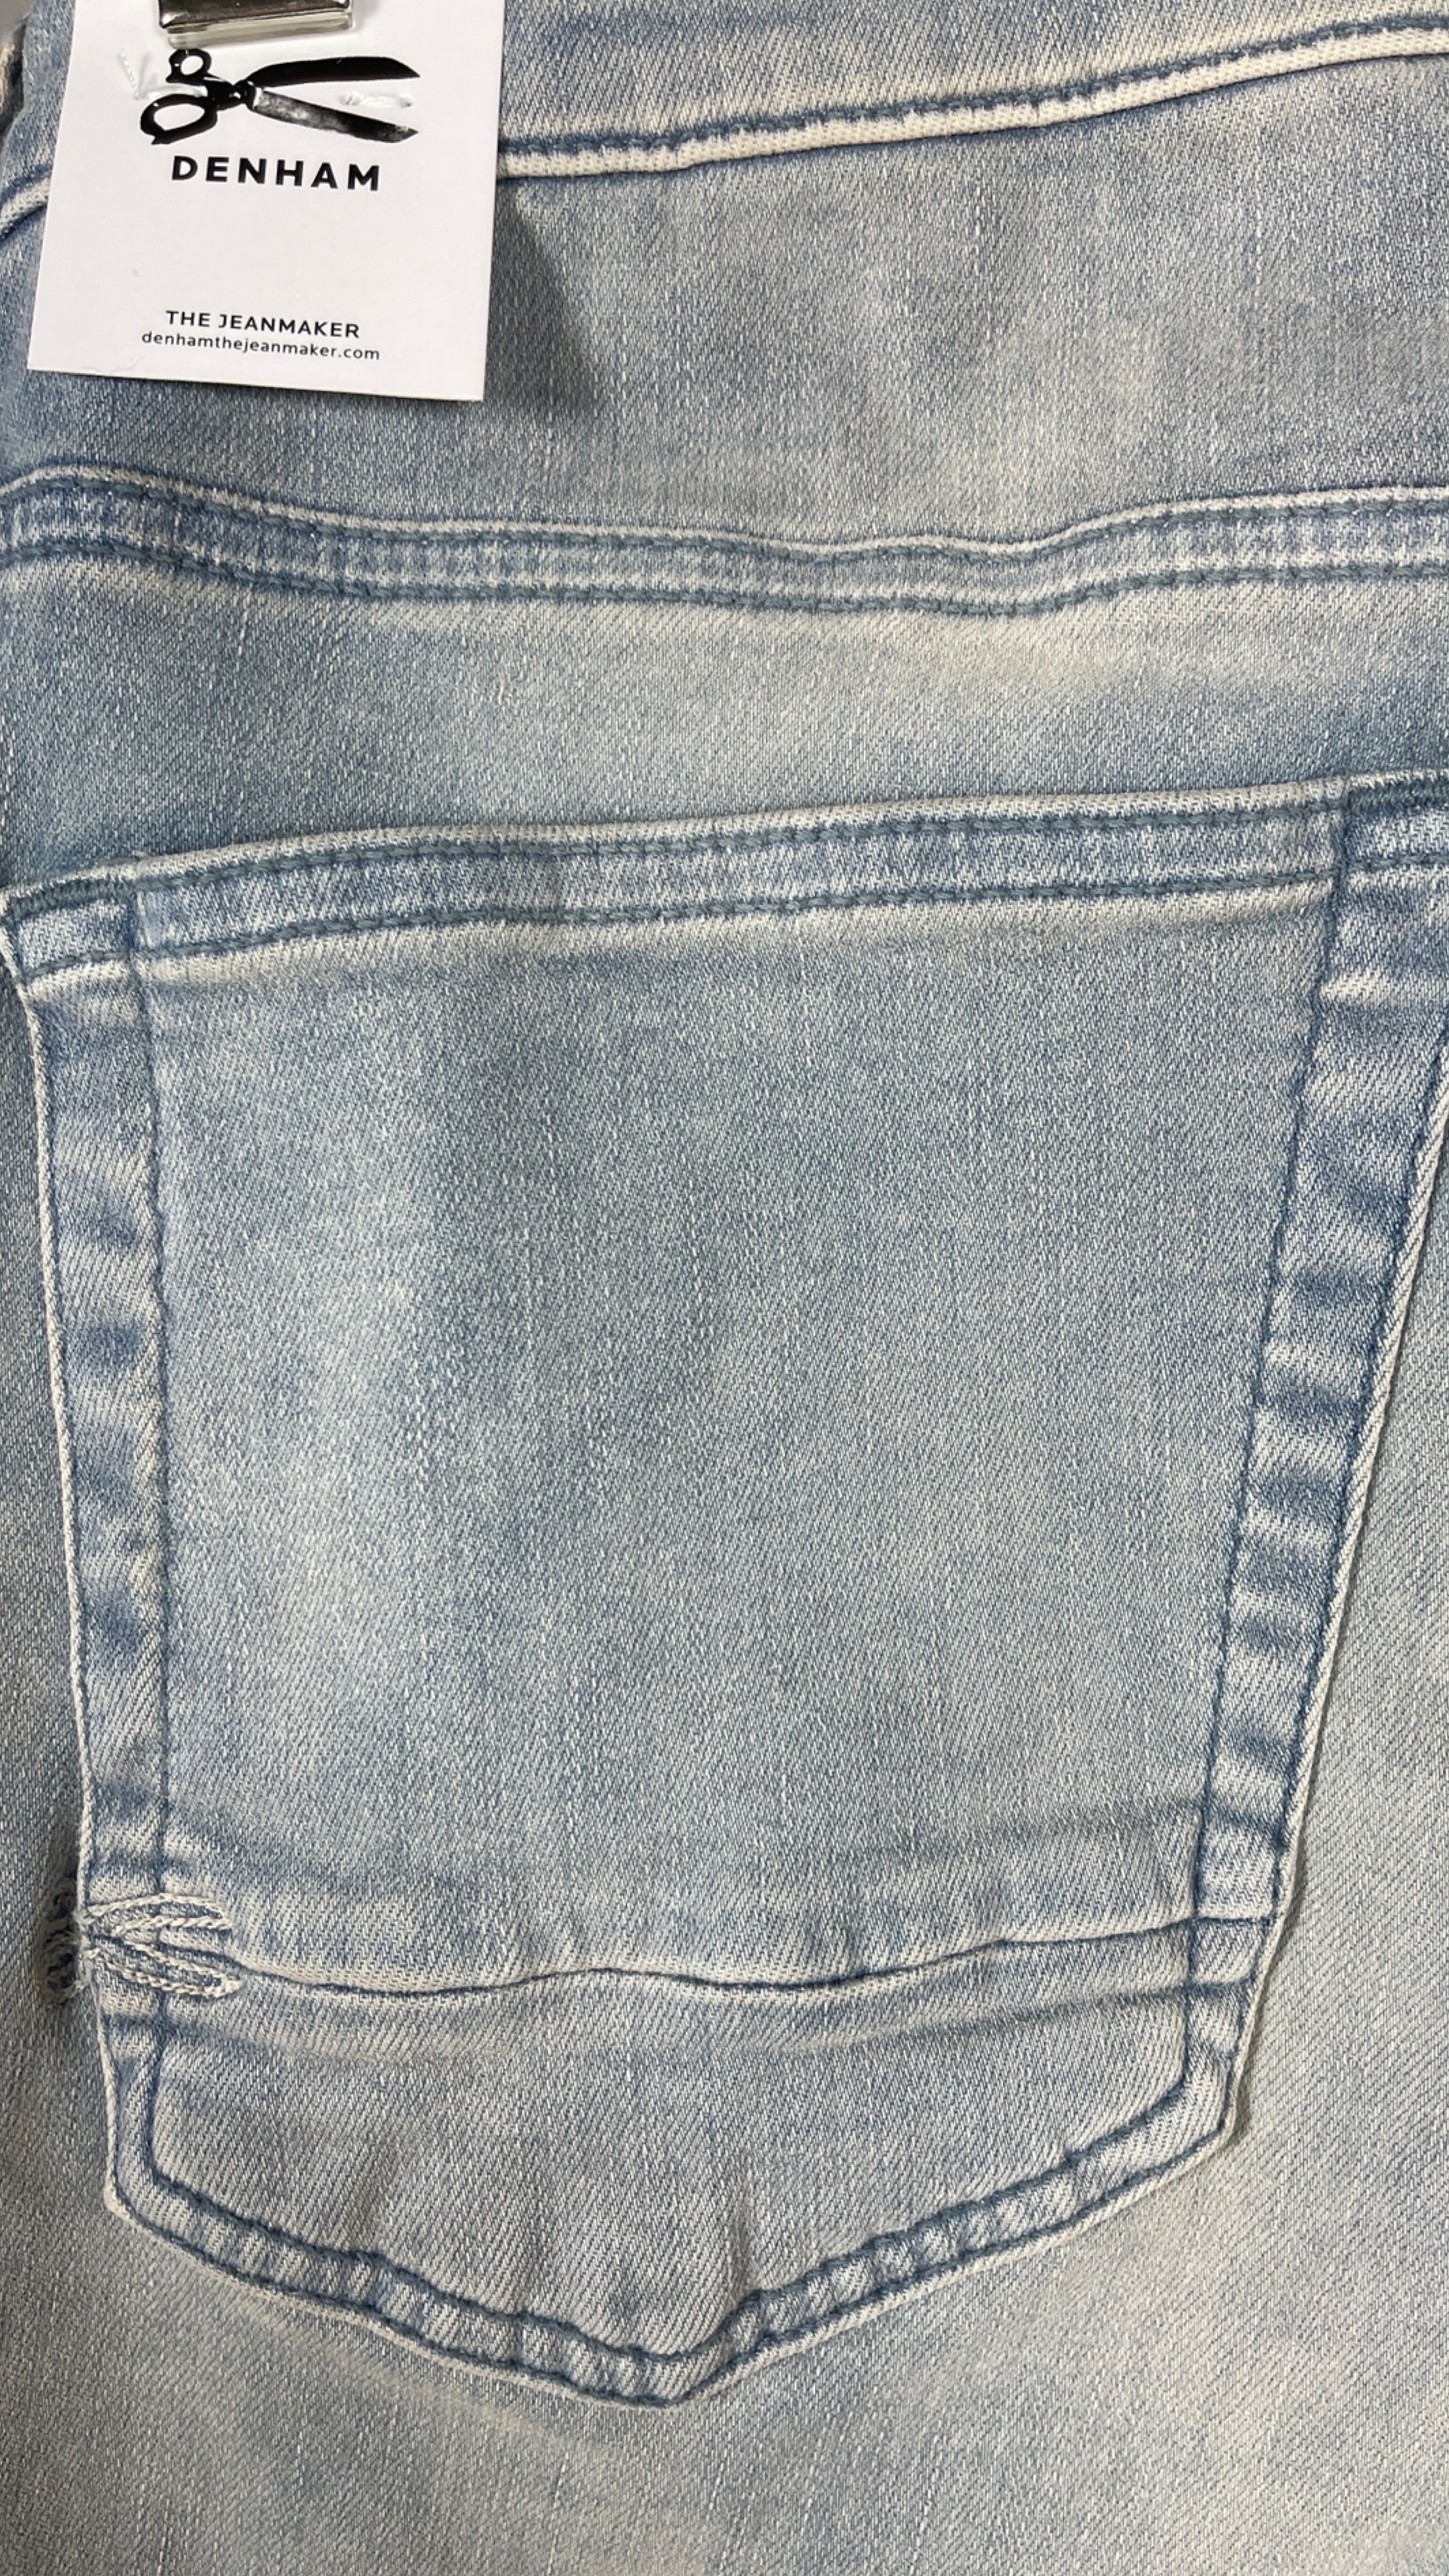 DENHAM 01-22-04-11-028 BOLT FMSW 
                Herren Jeans Hellblau  Wasched Look Blue